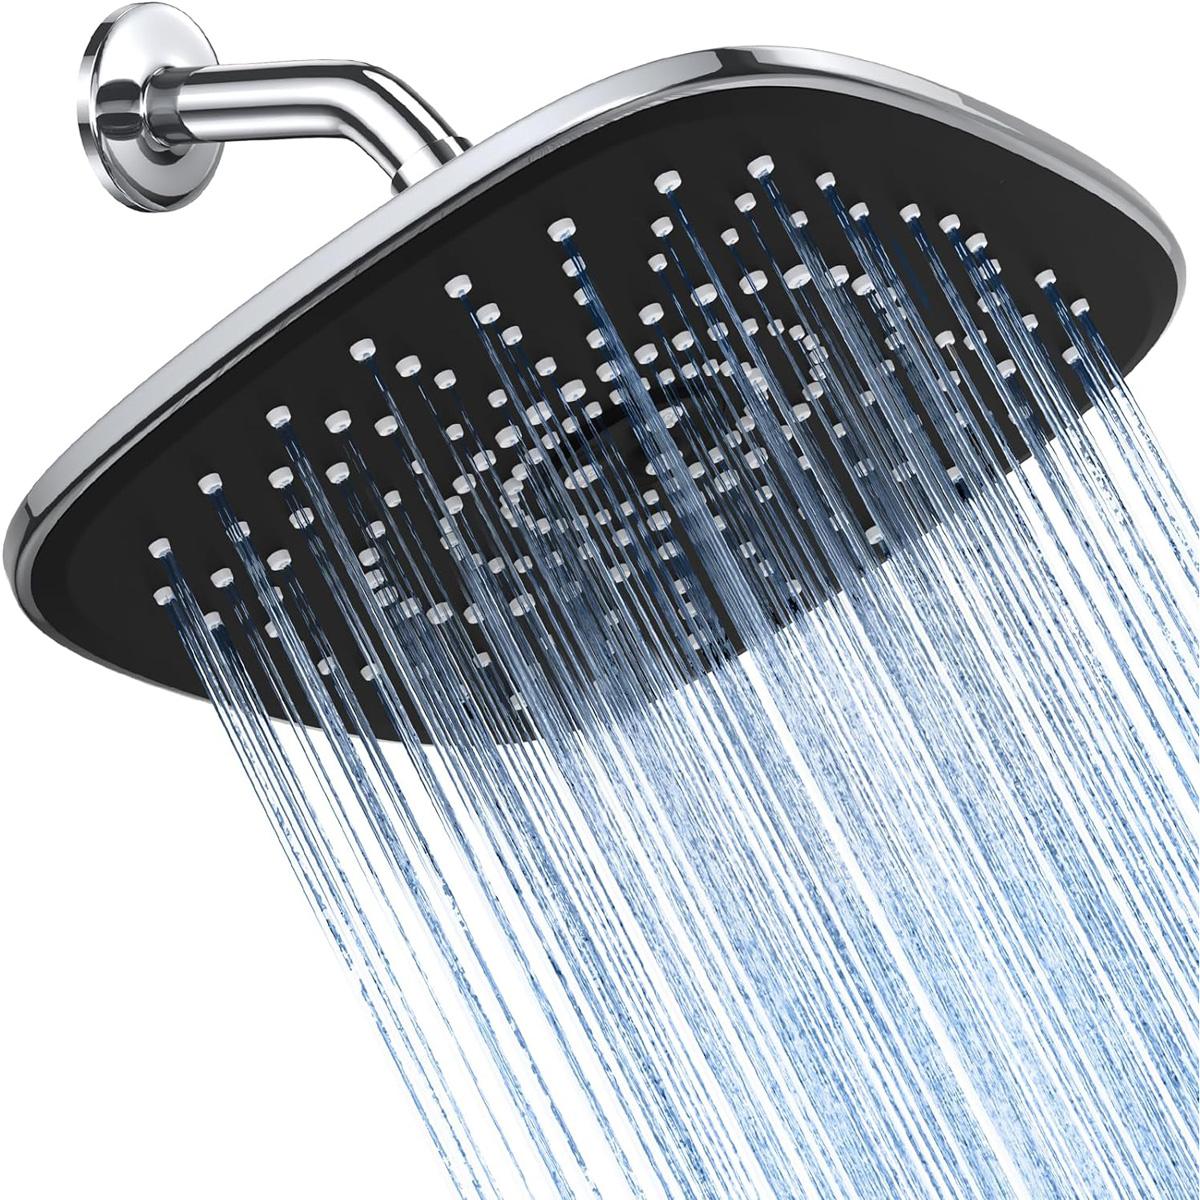 Veken 12 inch Rain Rectangle Shower Head for $11.99